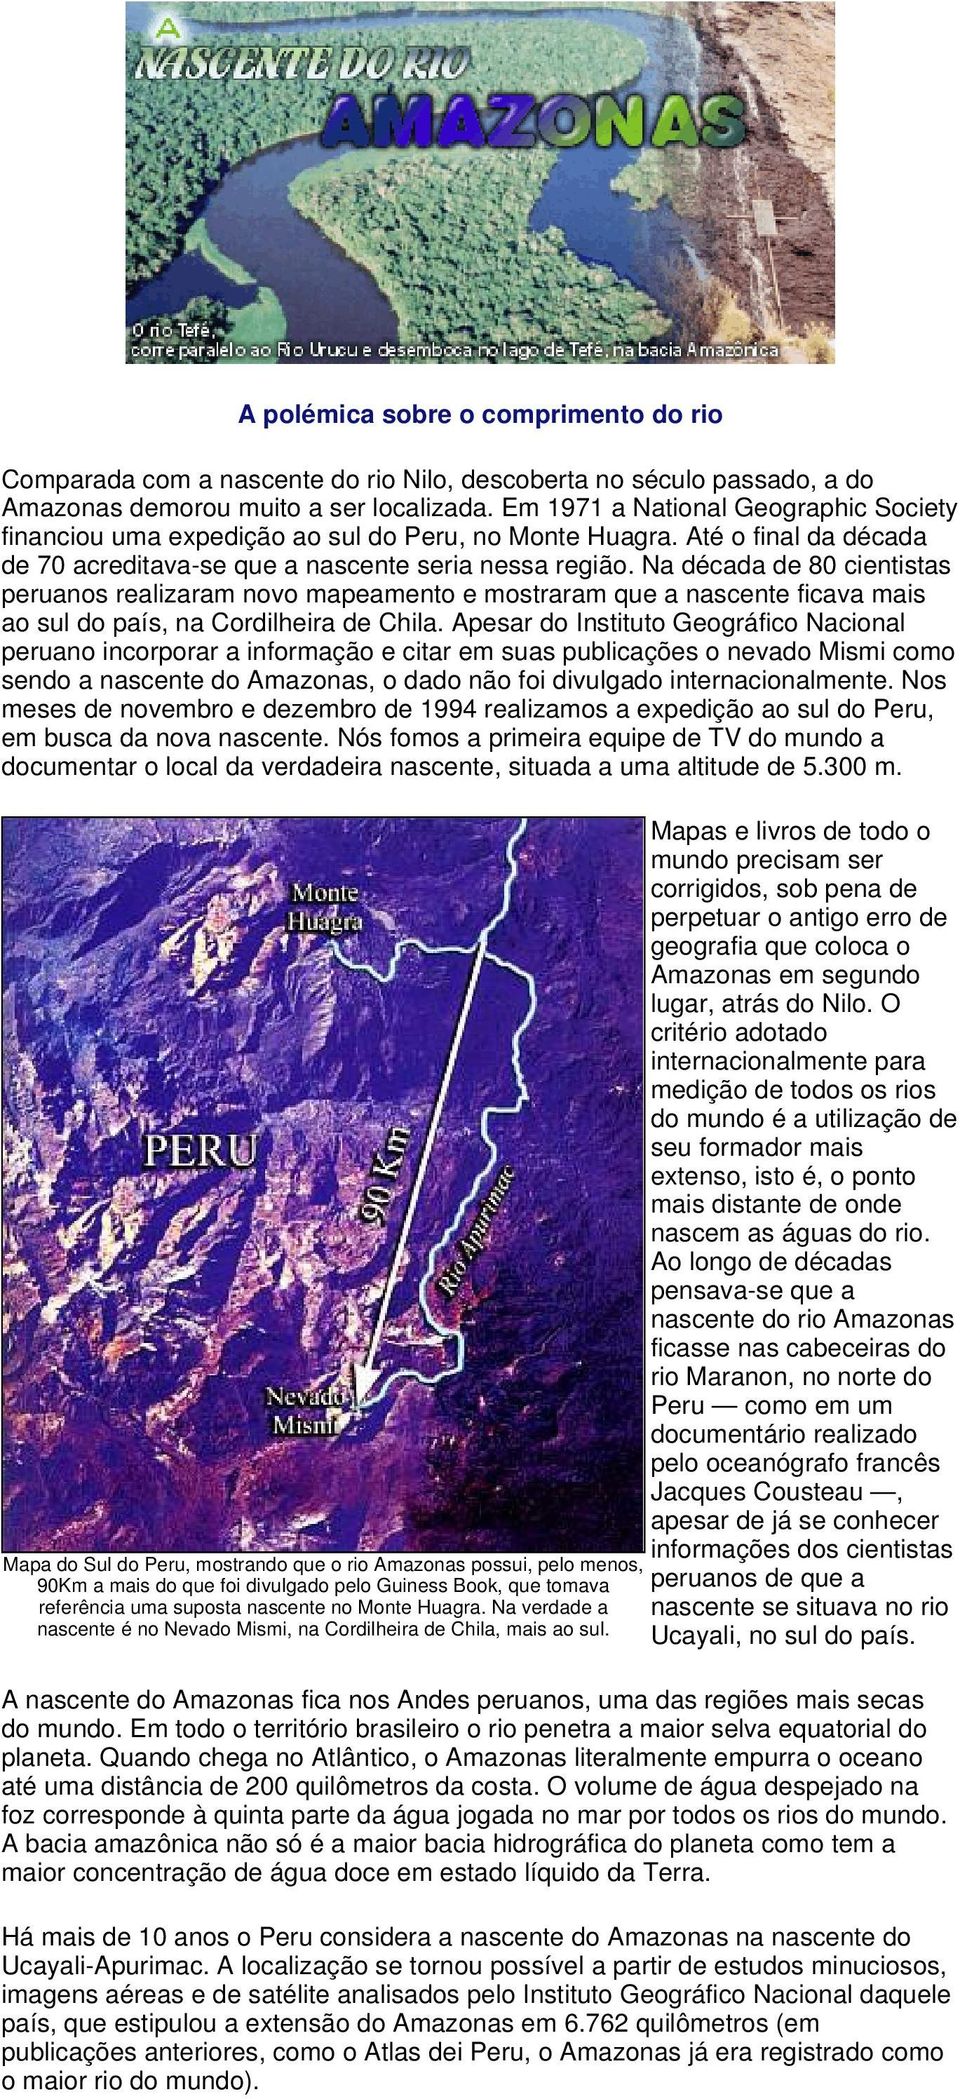 Na década de 80 cientistas peruanos realizaram novo mapeamento e mostraram que a nascente ficava mais ao sul do país, na Cordilheira de Chila.